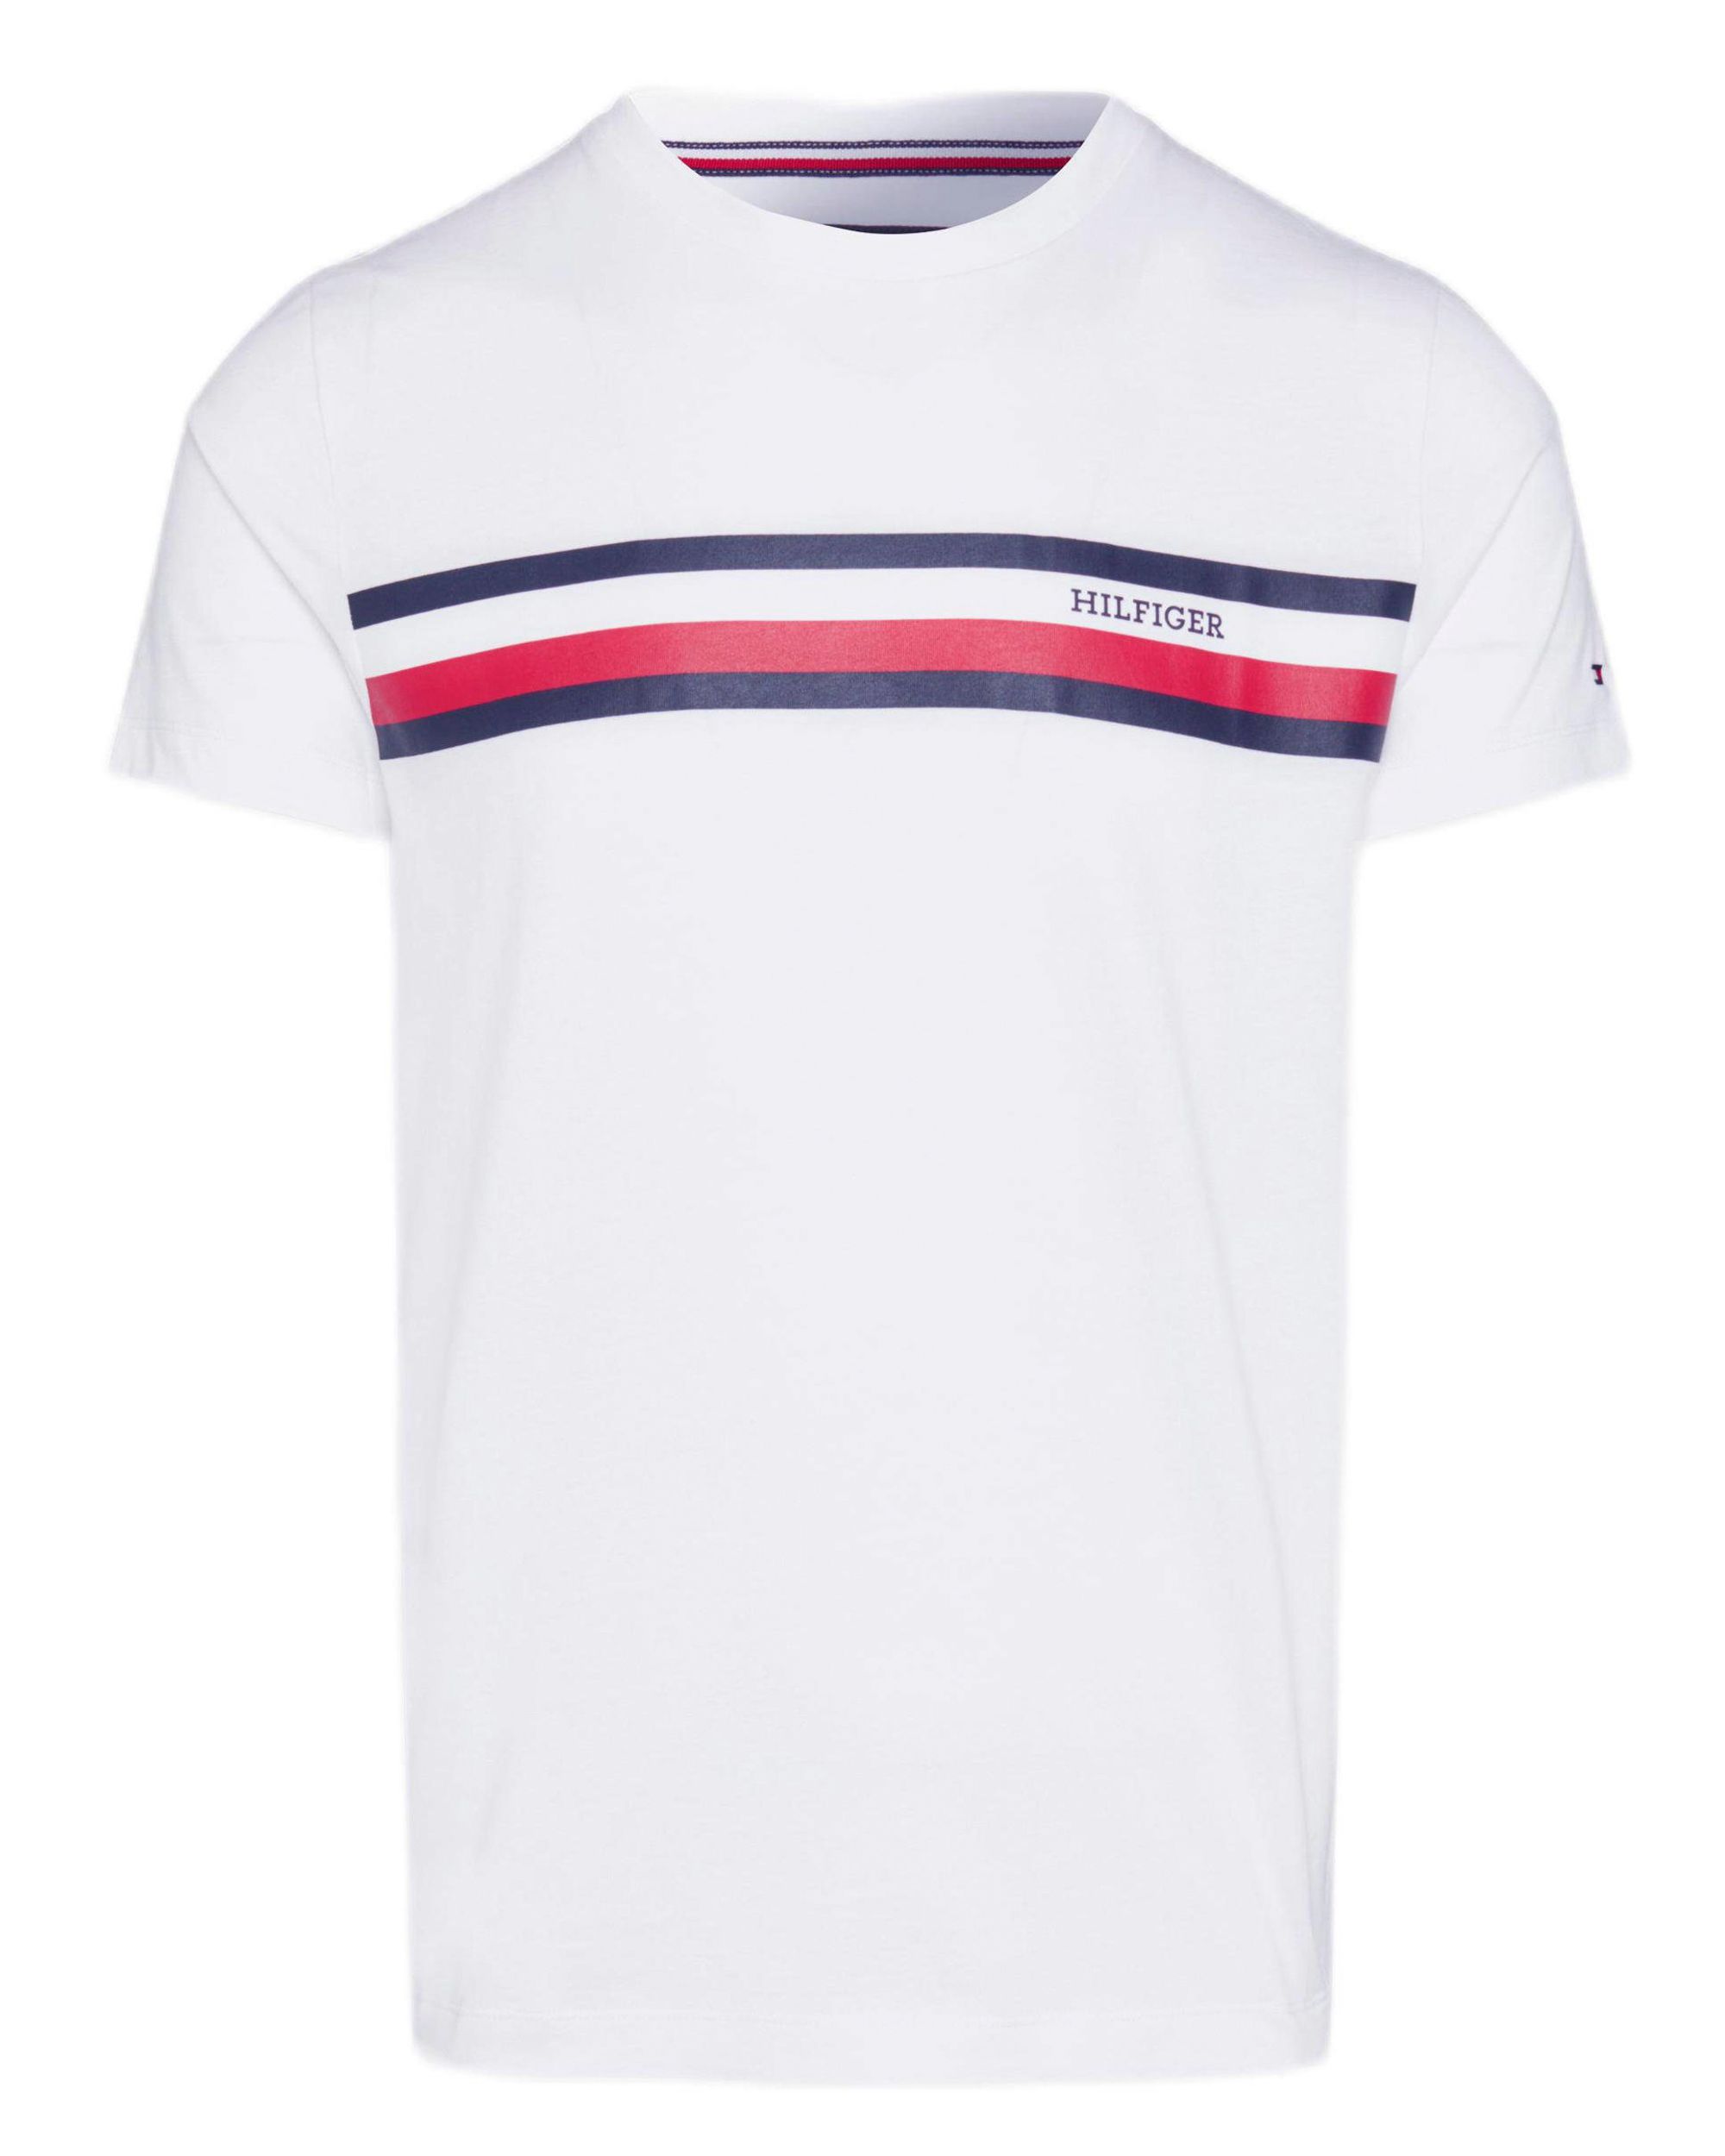 Tommy Hilfiger Menswear T-shirt KM Wit 089065-001-L